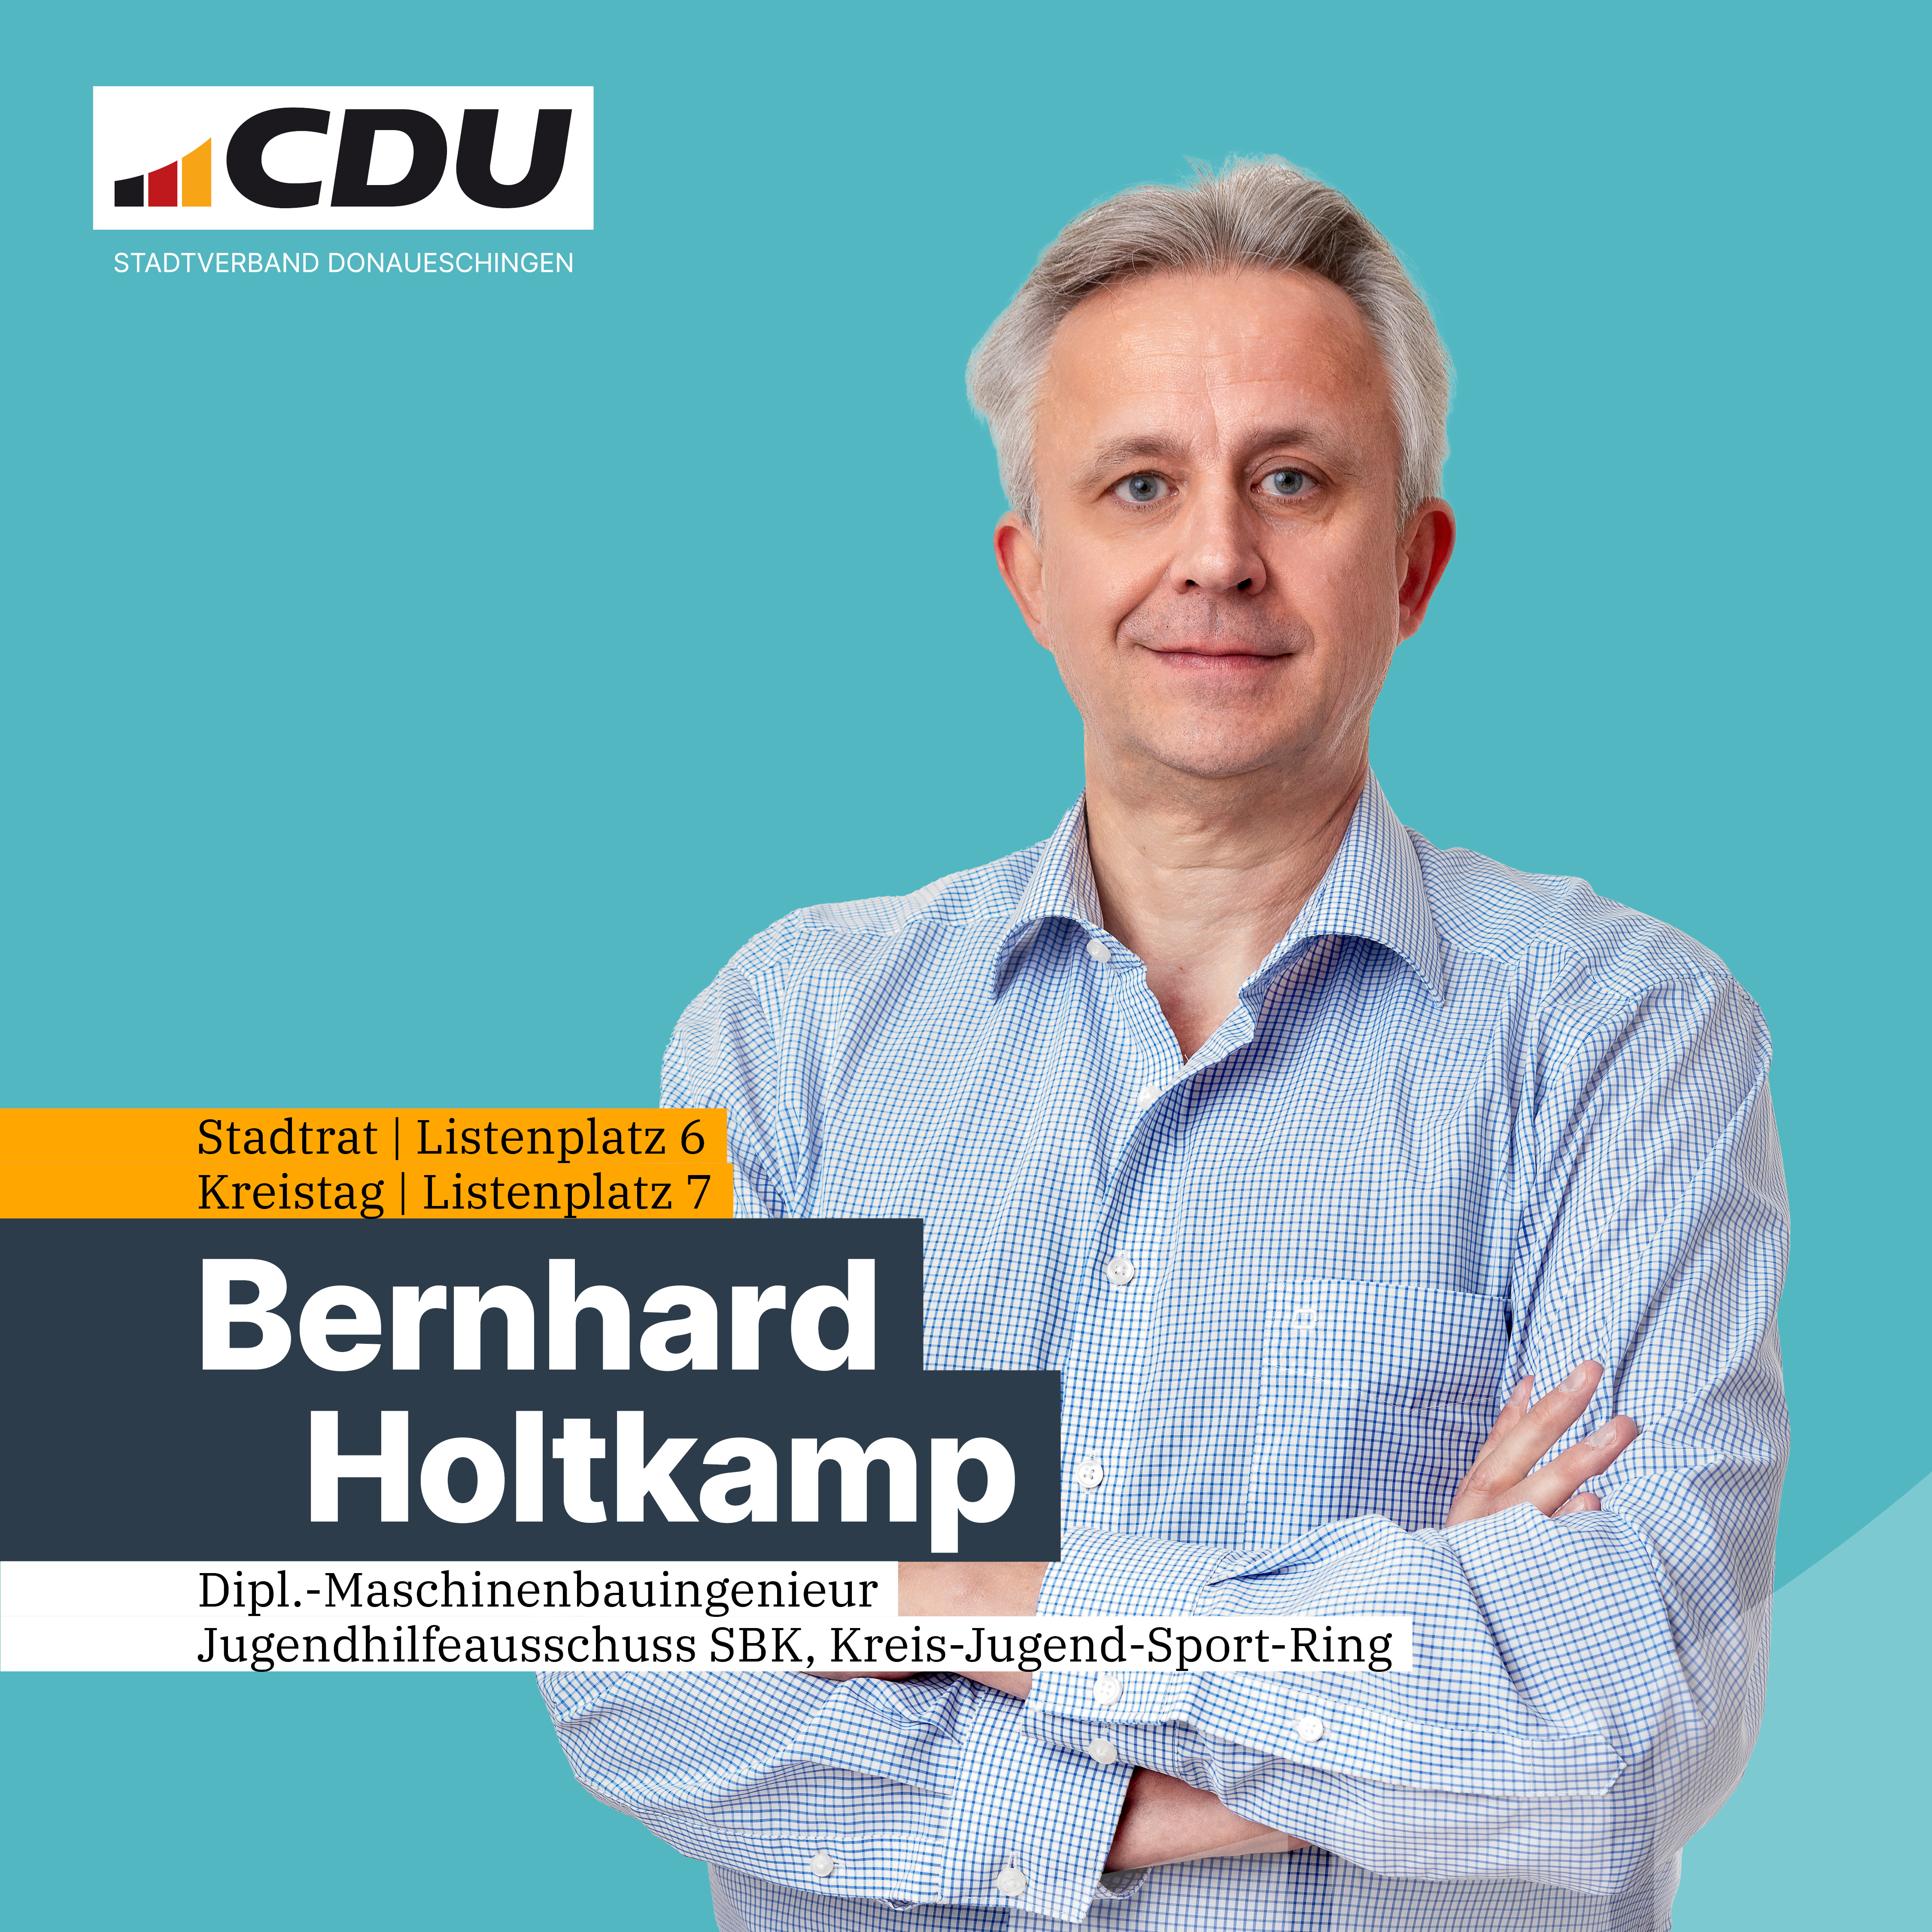  Bernhard Holtkamp